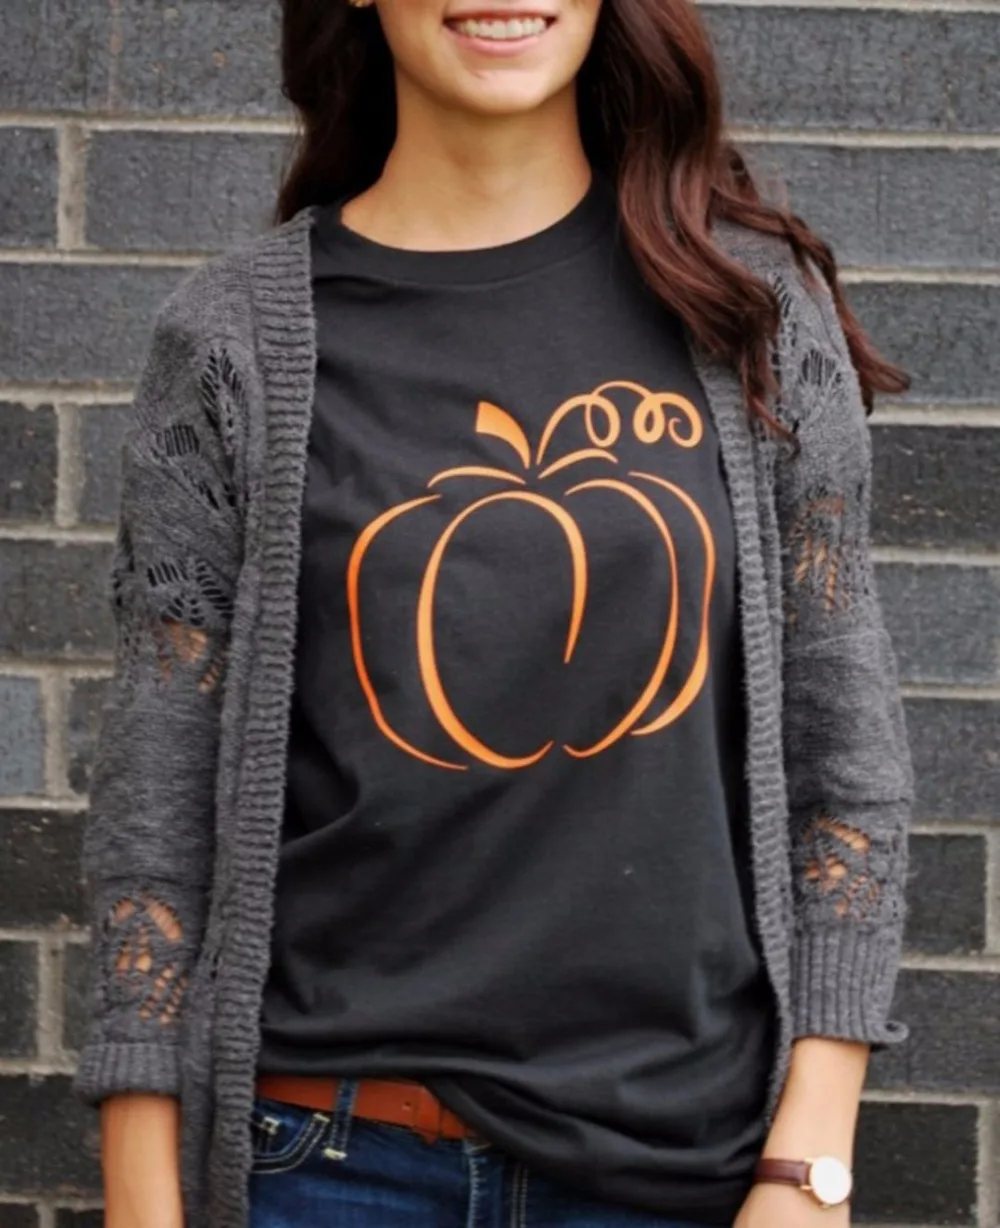 Pumpkin Shirts for Women Funny Halloween Clothing Fall T-Shirts Top